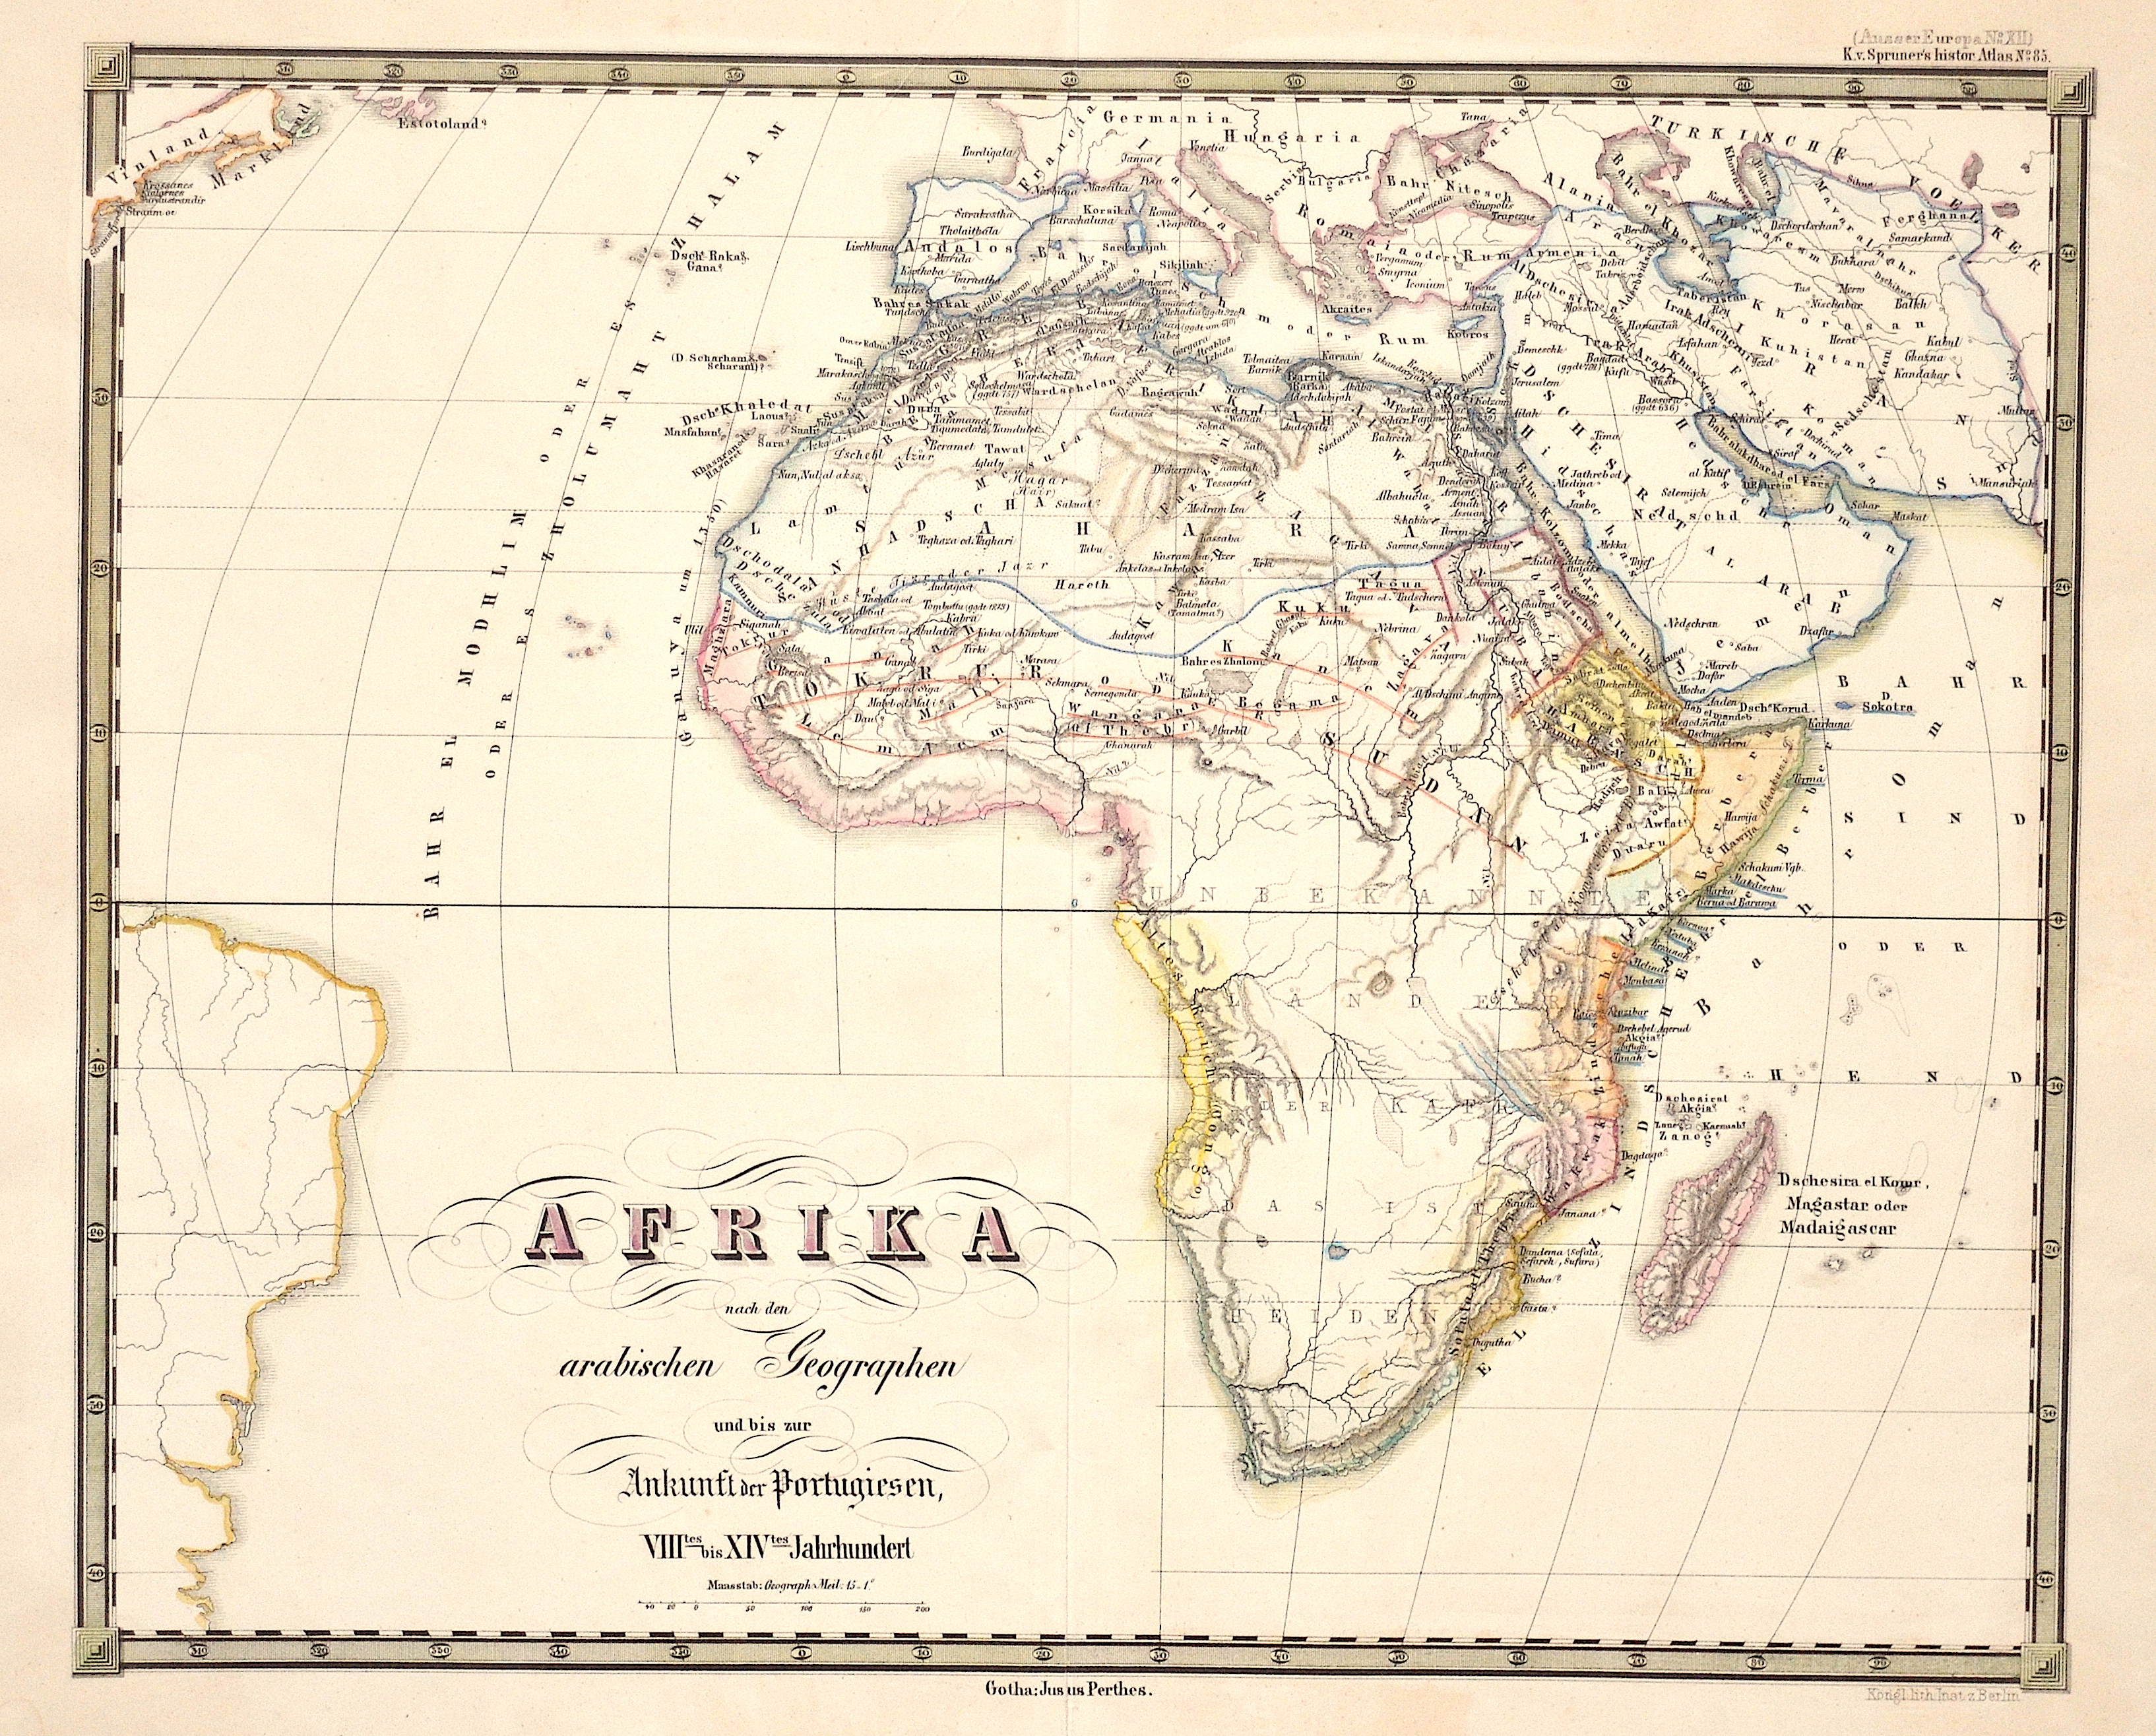 Perthes  Afrika nach den arabischen Geographen und bis zur Ankunft der Portugiesen, VIIItes bis XIVtes Jahrhundert.